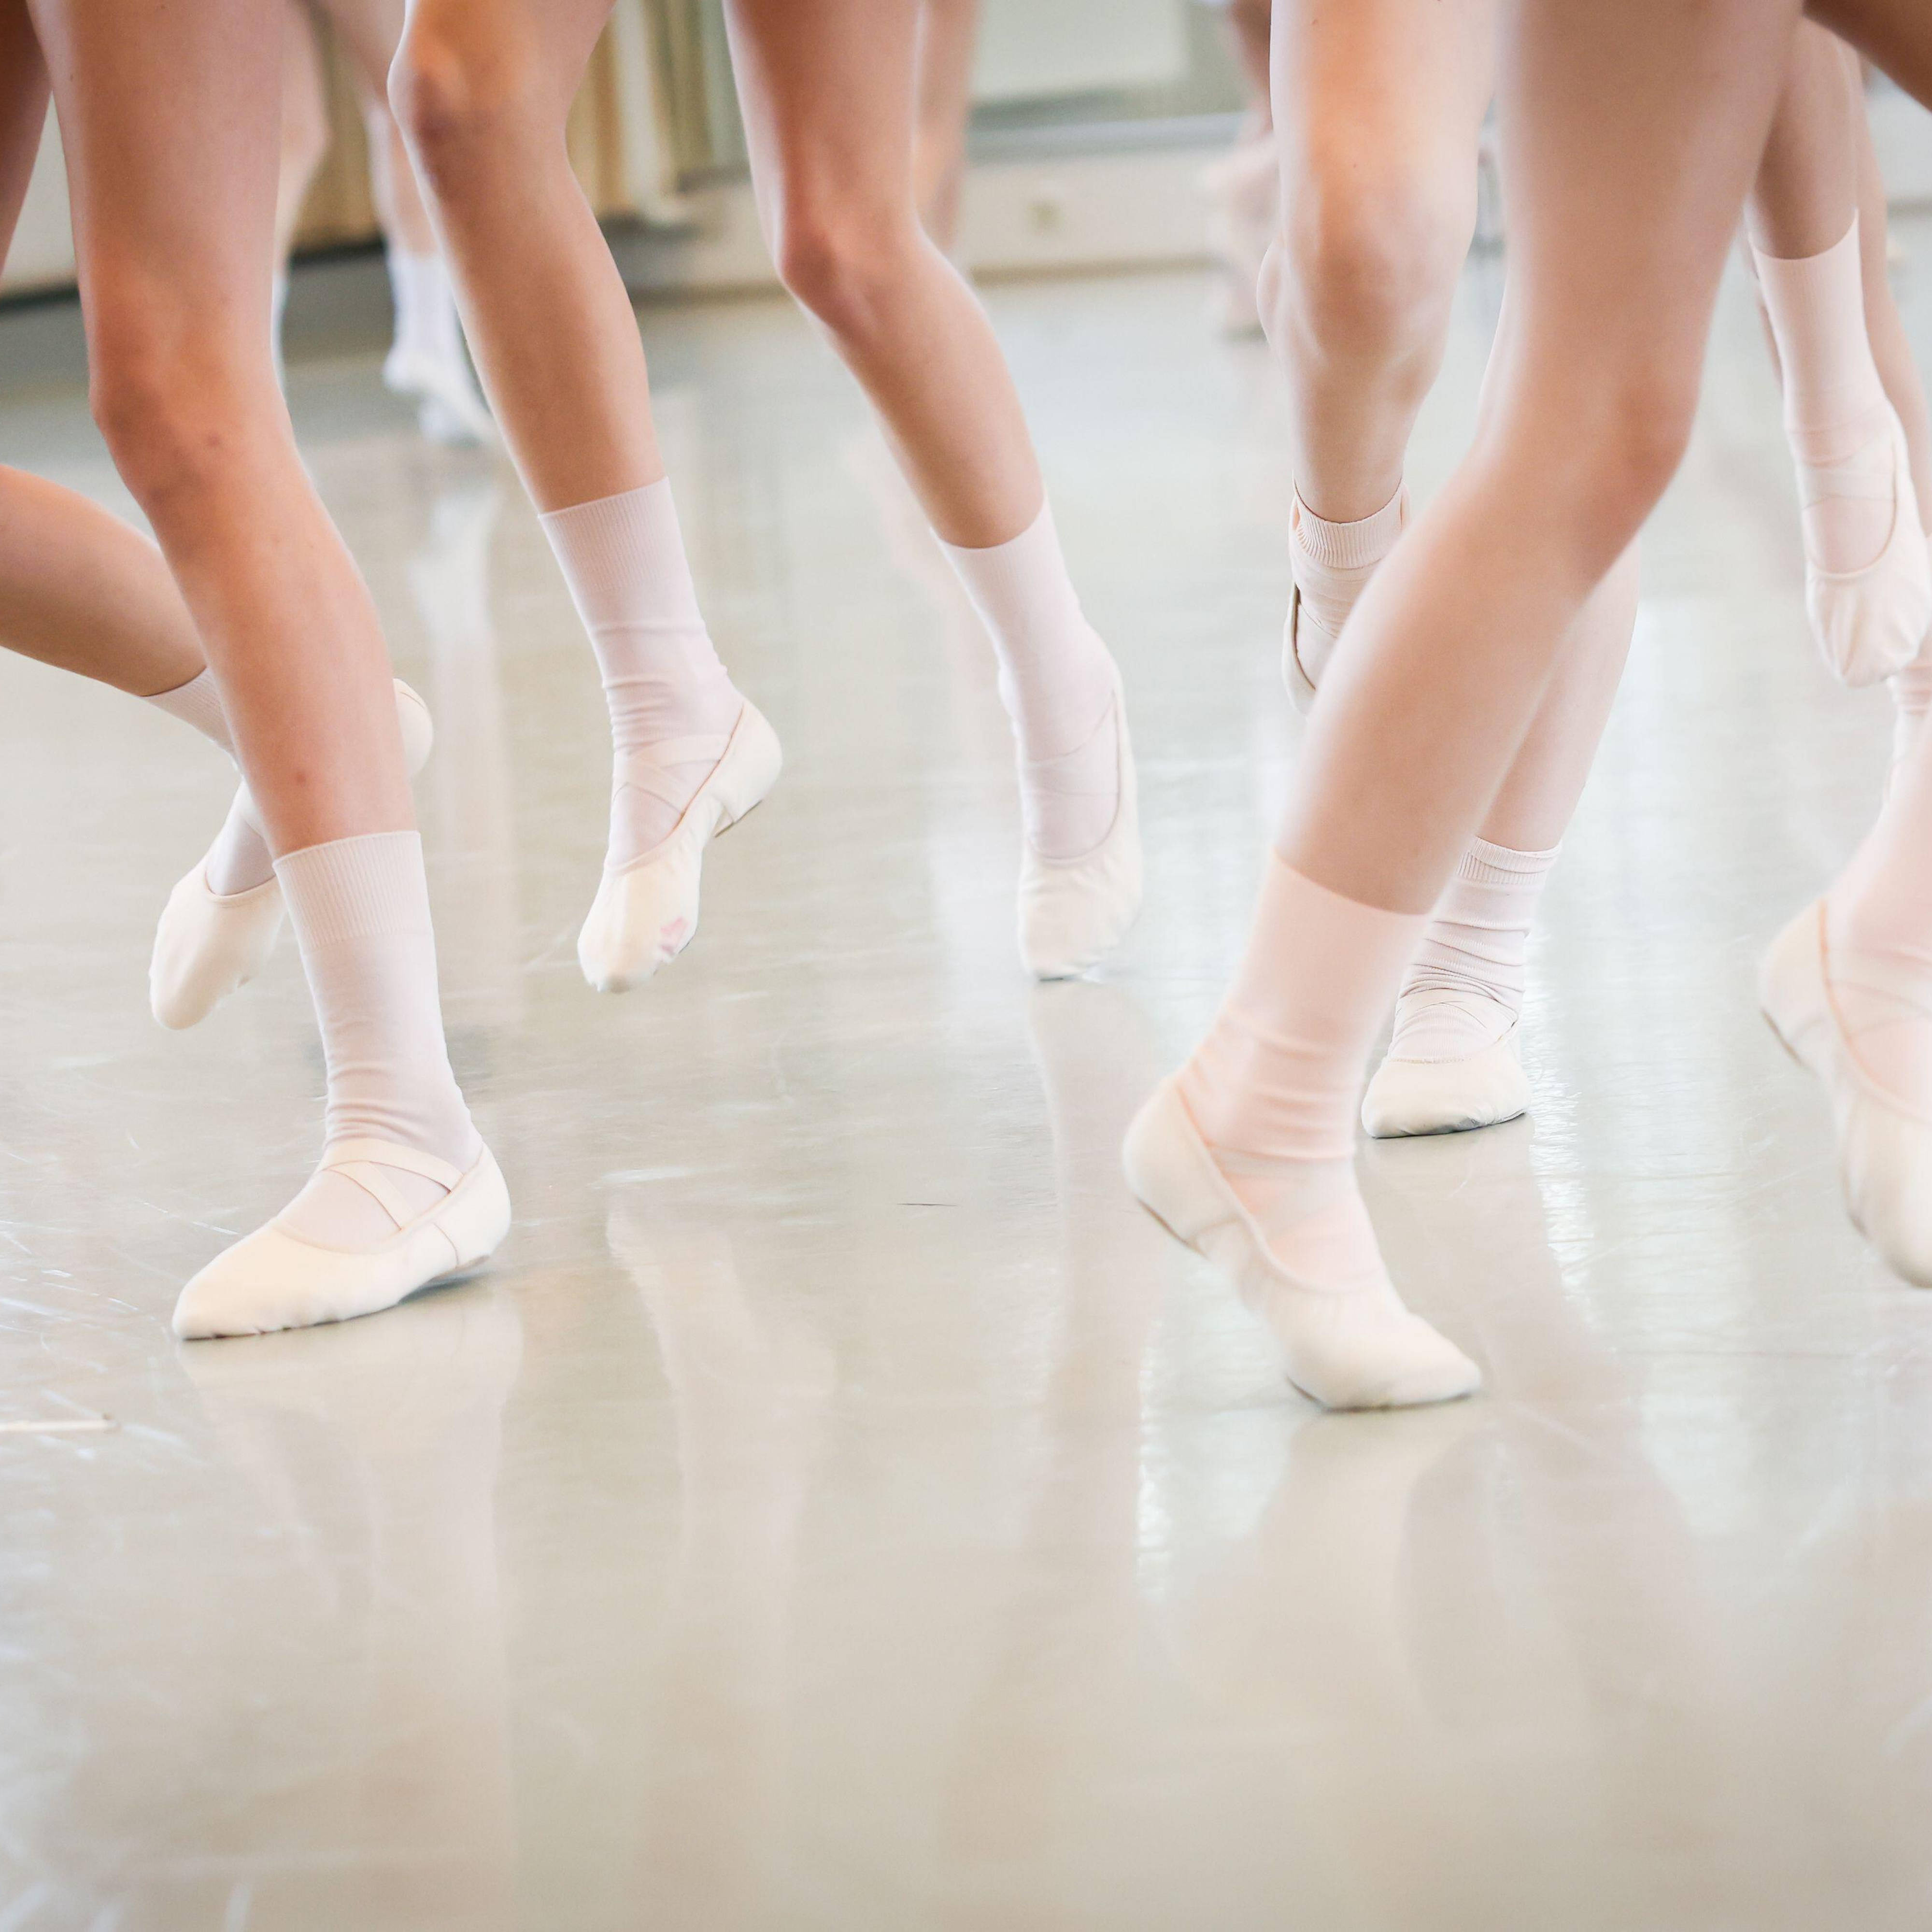 Dance school scraps ballet auditions saying it's an 'elitist white art  form' - LBC